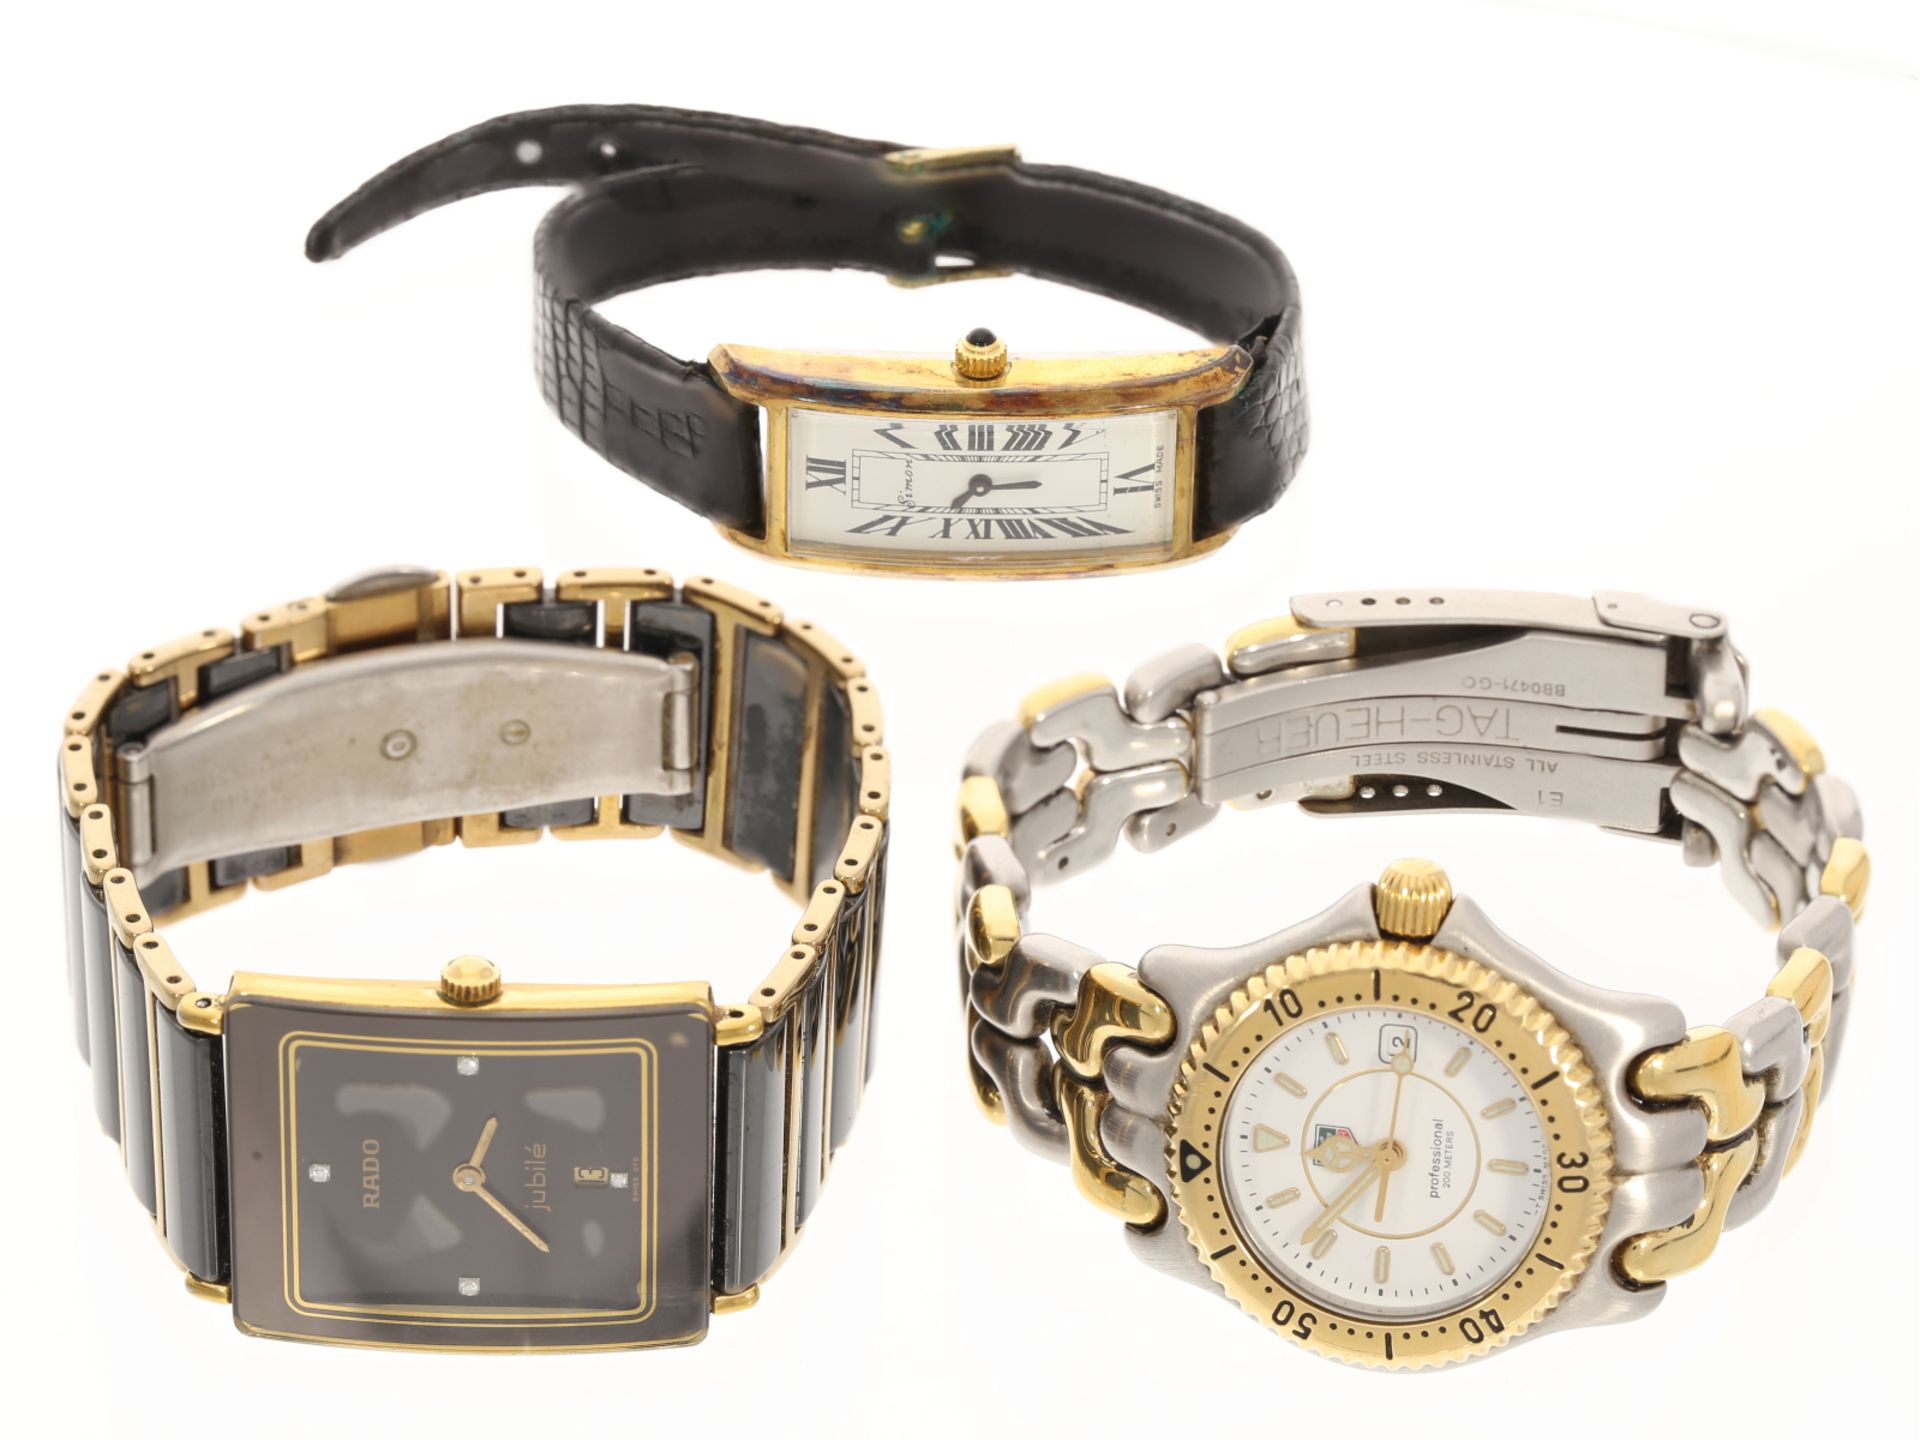 Konvolut bestehend aus drei Armbanduhren: Tag Heuer Professional Taucheruhr, Rado Diastar, Simon